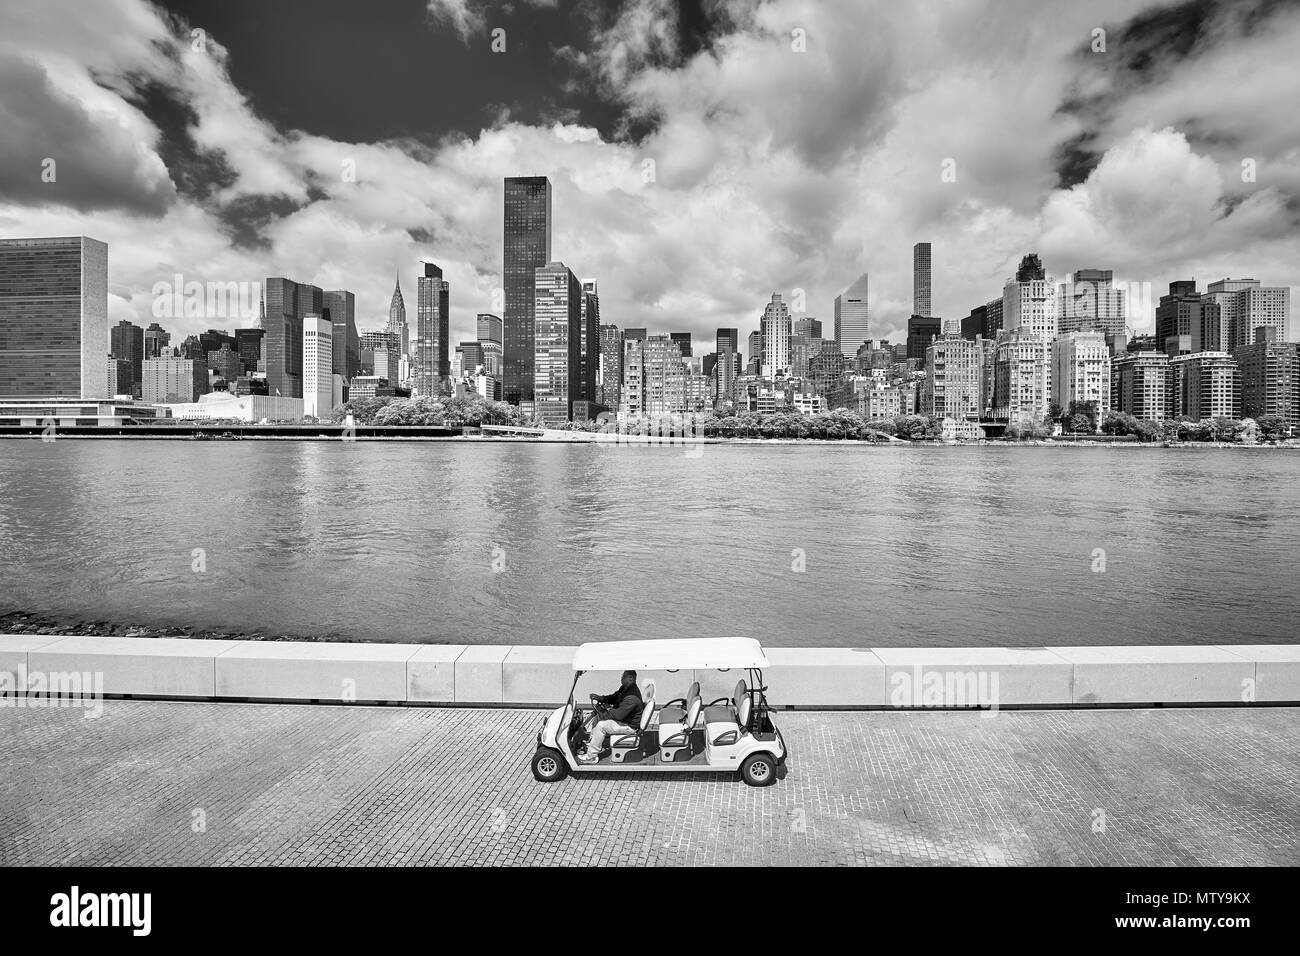 La ville de New York, USA - Le 26 mai 2017 passager : chariot de golf sur le Franklin D. Roosevelt Four Freedoms Park promenade, New York City skyline en arrière-plan. Banque D'Images